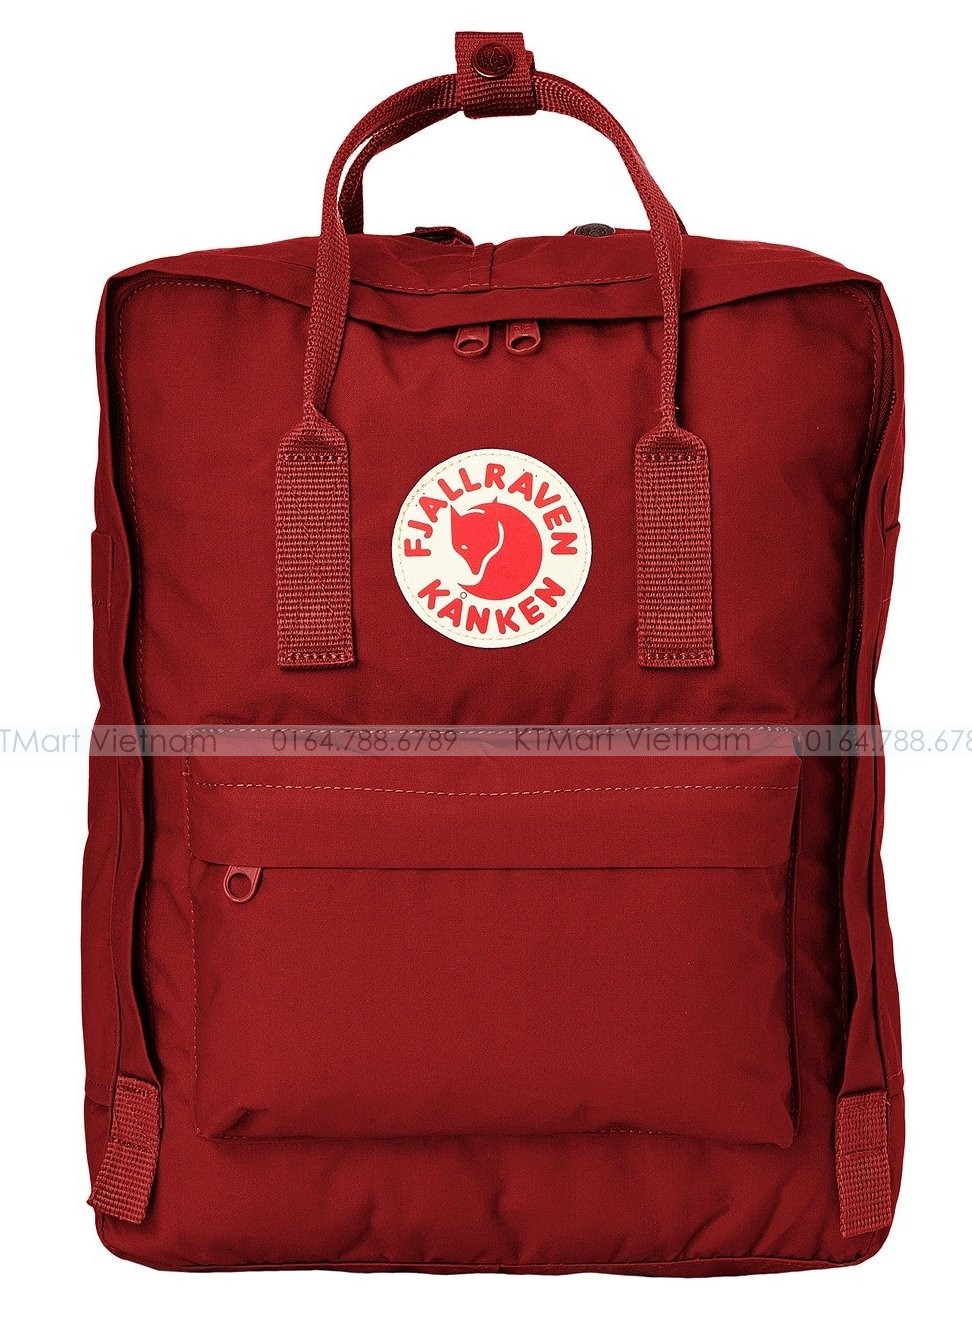 FjallRaven Kanken Mini Kids Backpack Deep Red Fjallraven ktmart.vn 0